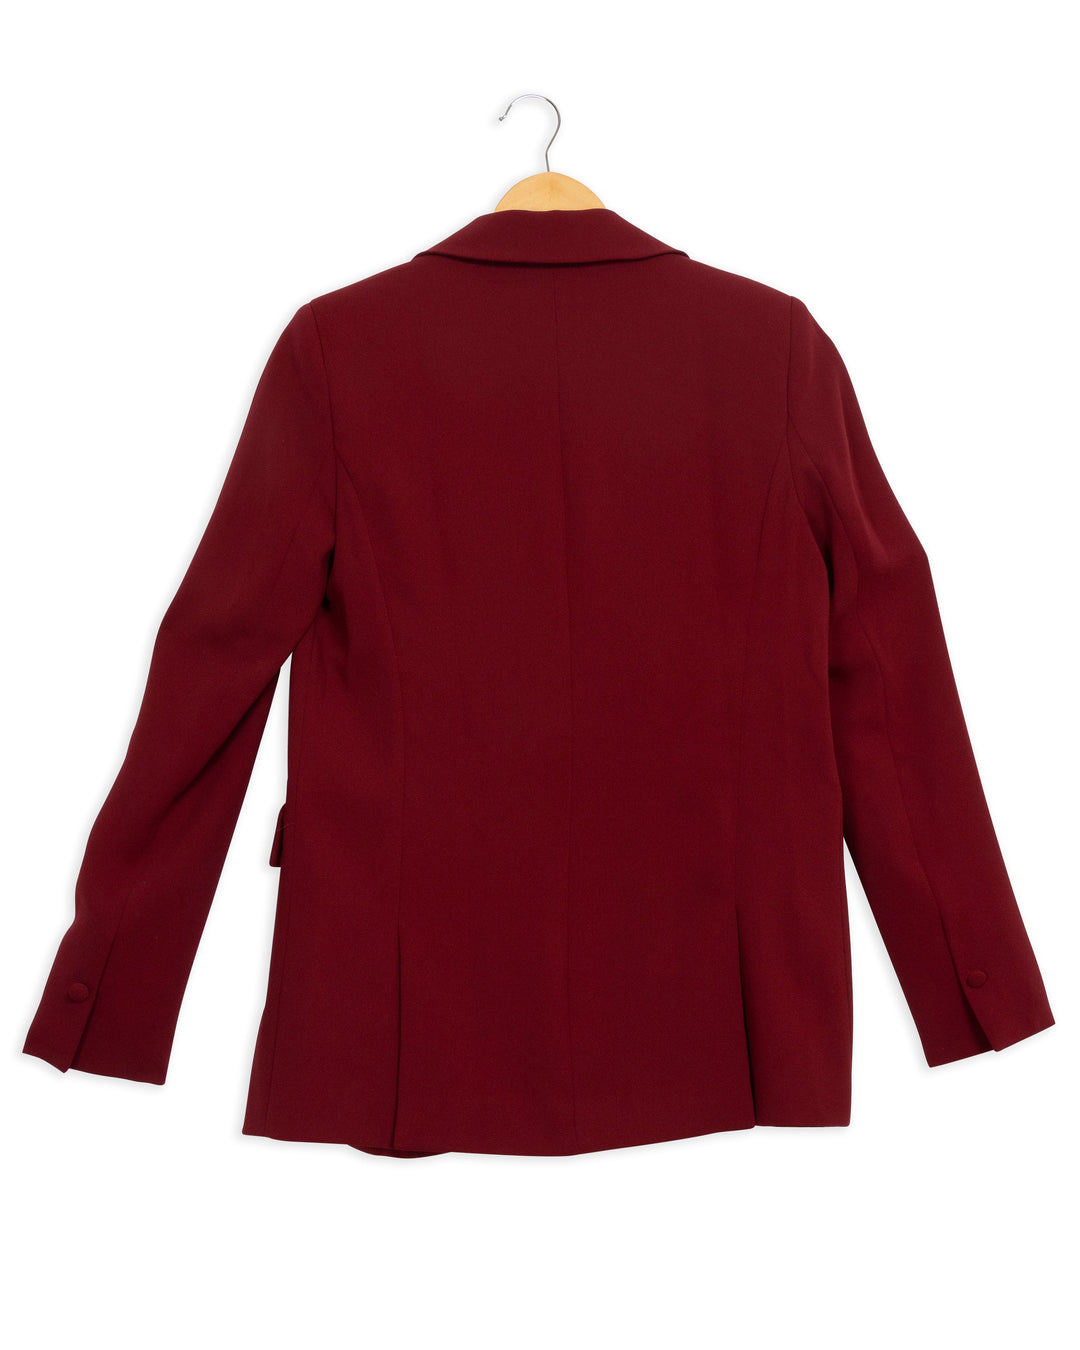 Burgundy Victoria jacket - 36